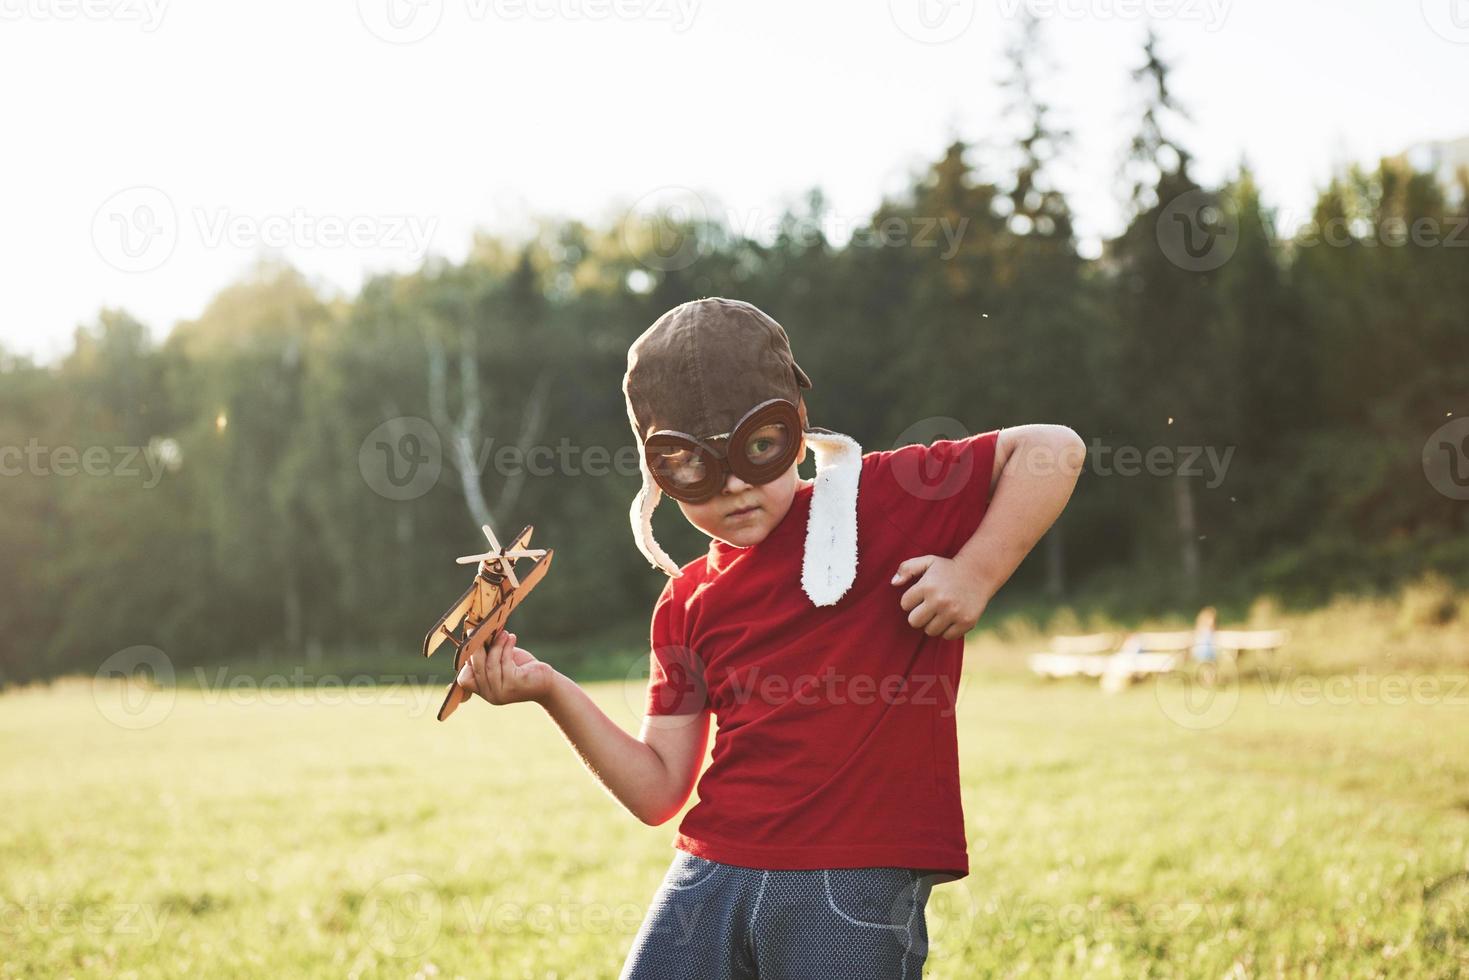 enfant heureux dans un casque de pilote jouant avec un avion jouet en bois et rêvant de devenir volant photo